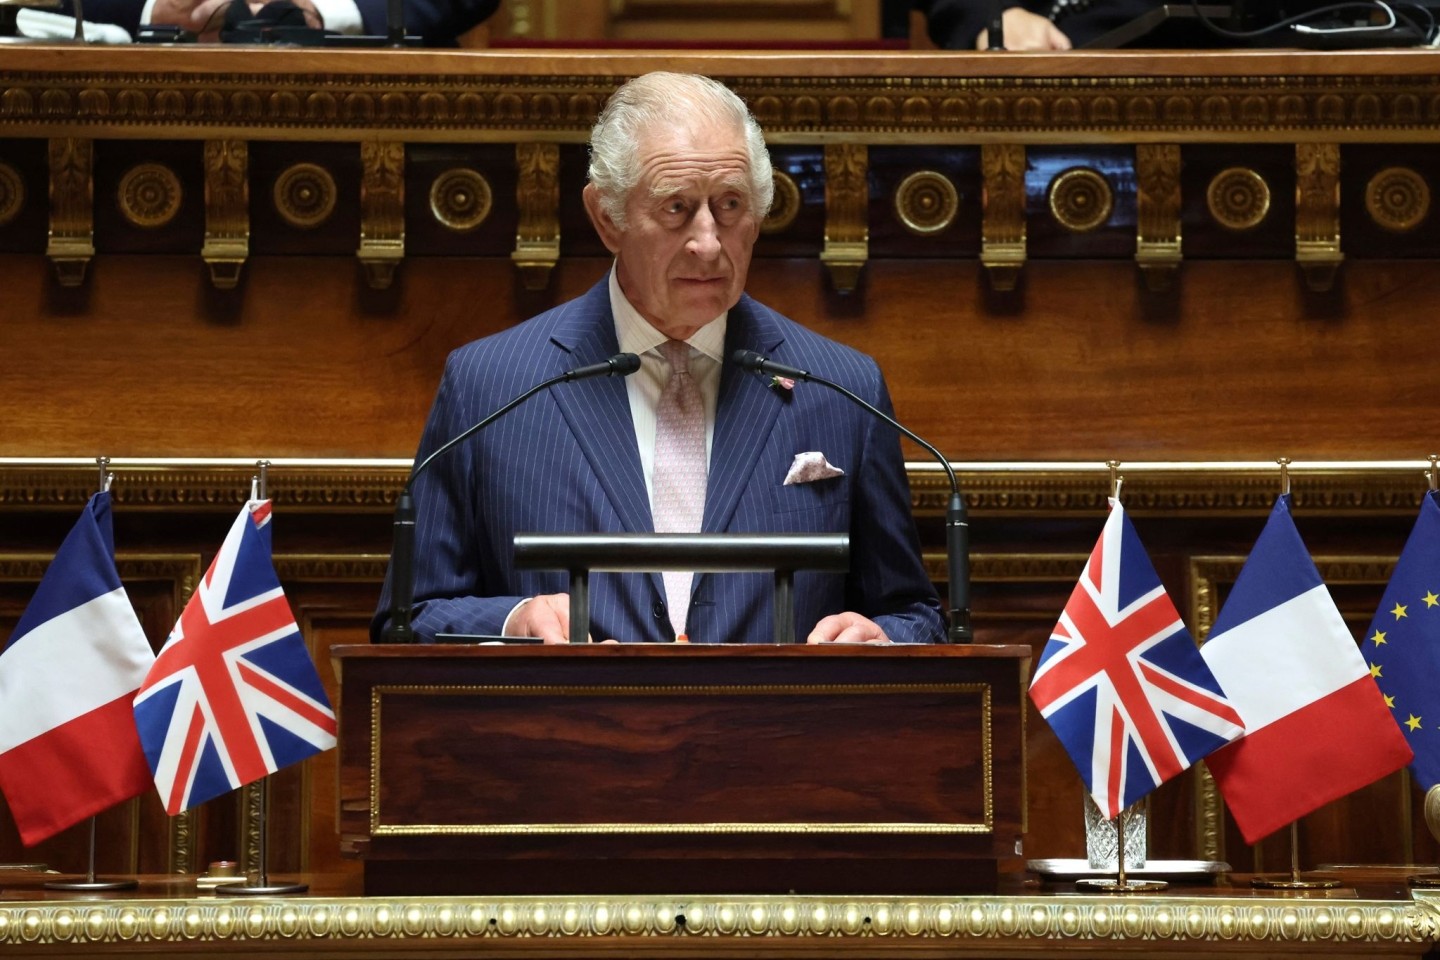 König Charles III. erinnert im französischen Senat an die Freundschaft zwischen Frankreich und Großbritannien.